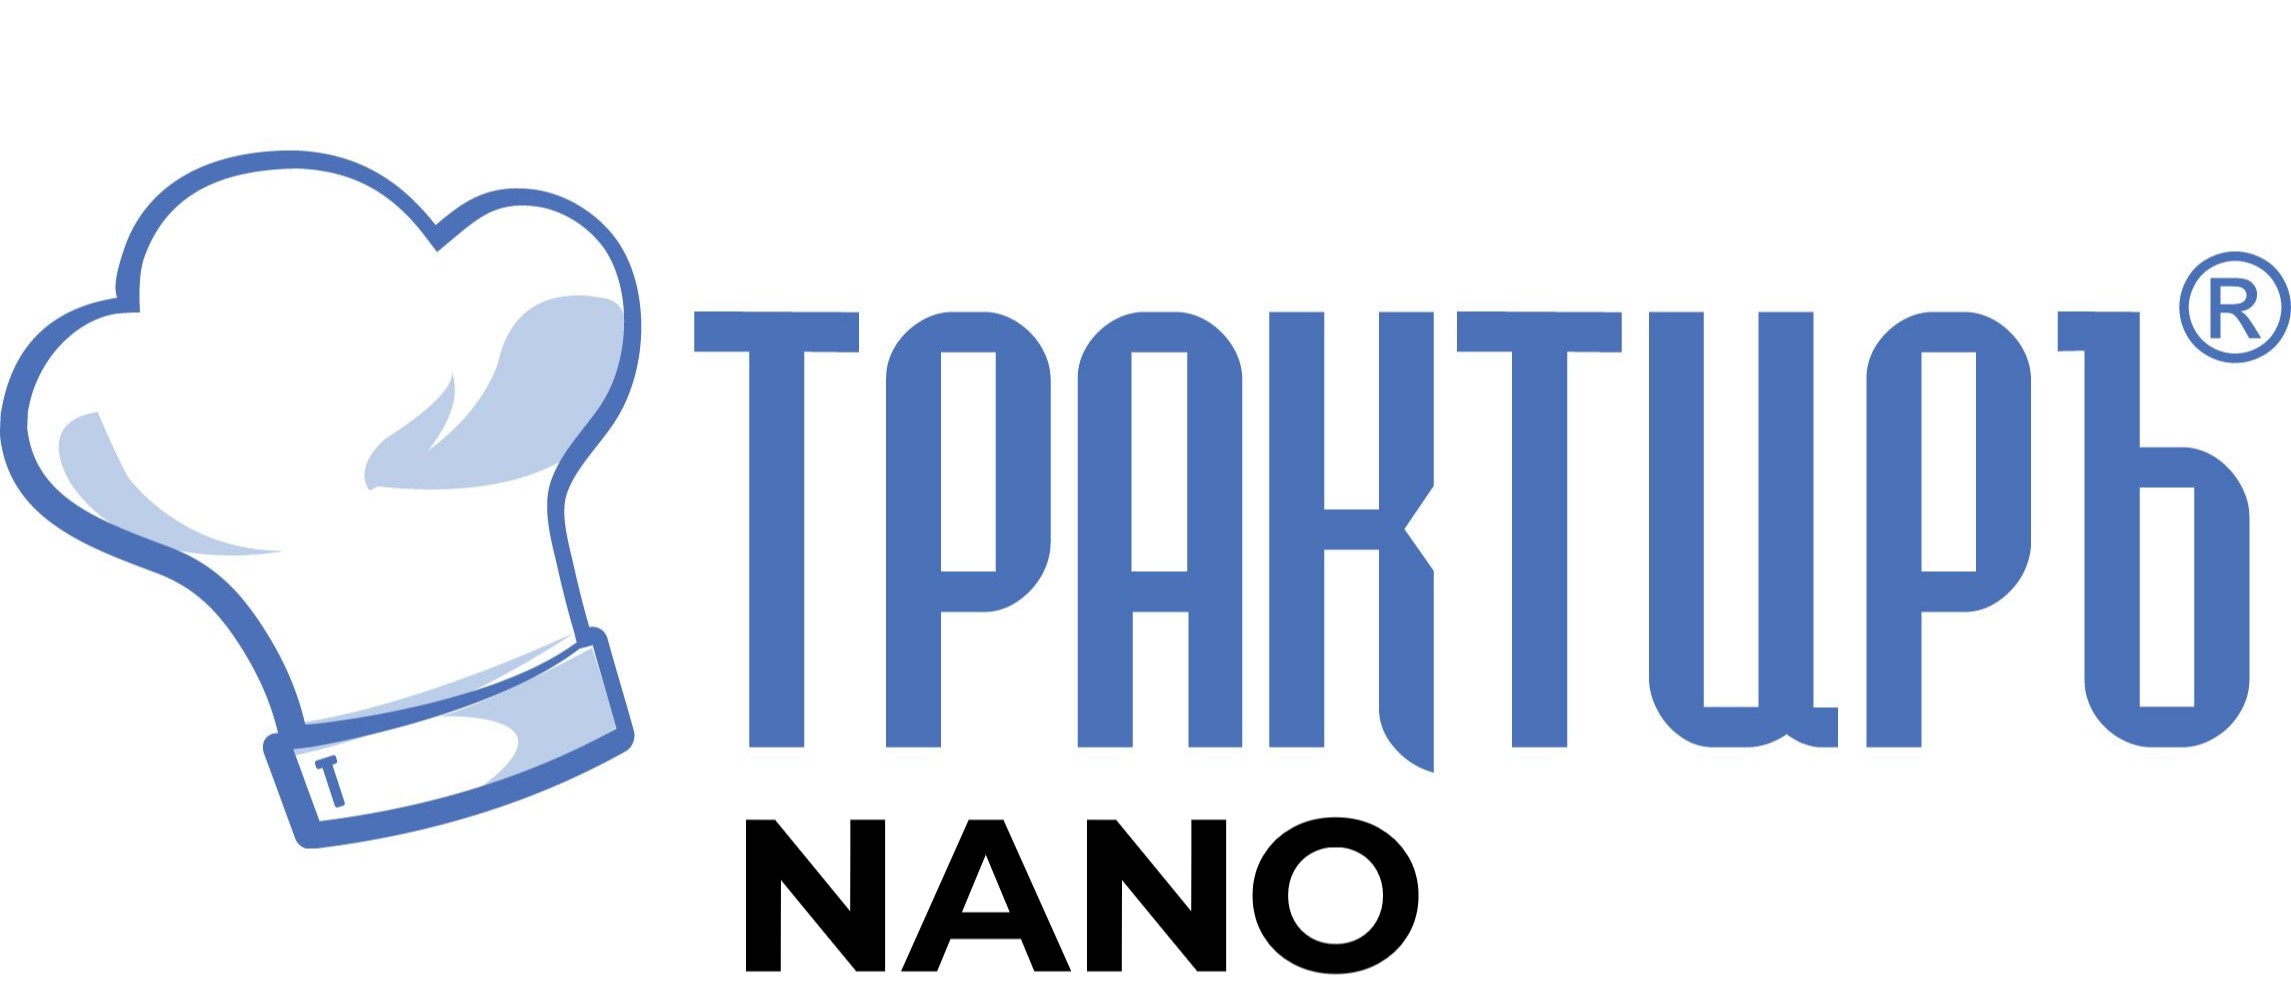 Конфигурация Трактиръ: Nano (Основная поставка) в Нижнекамске